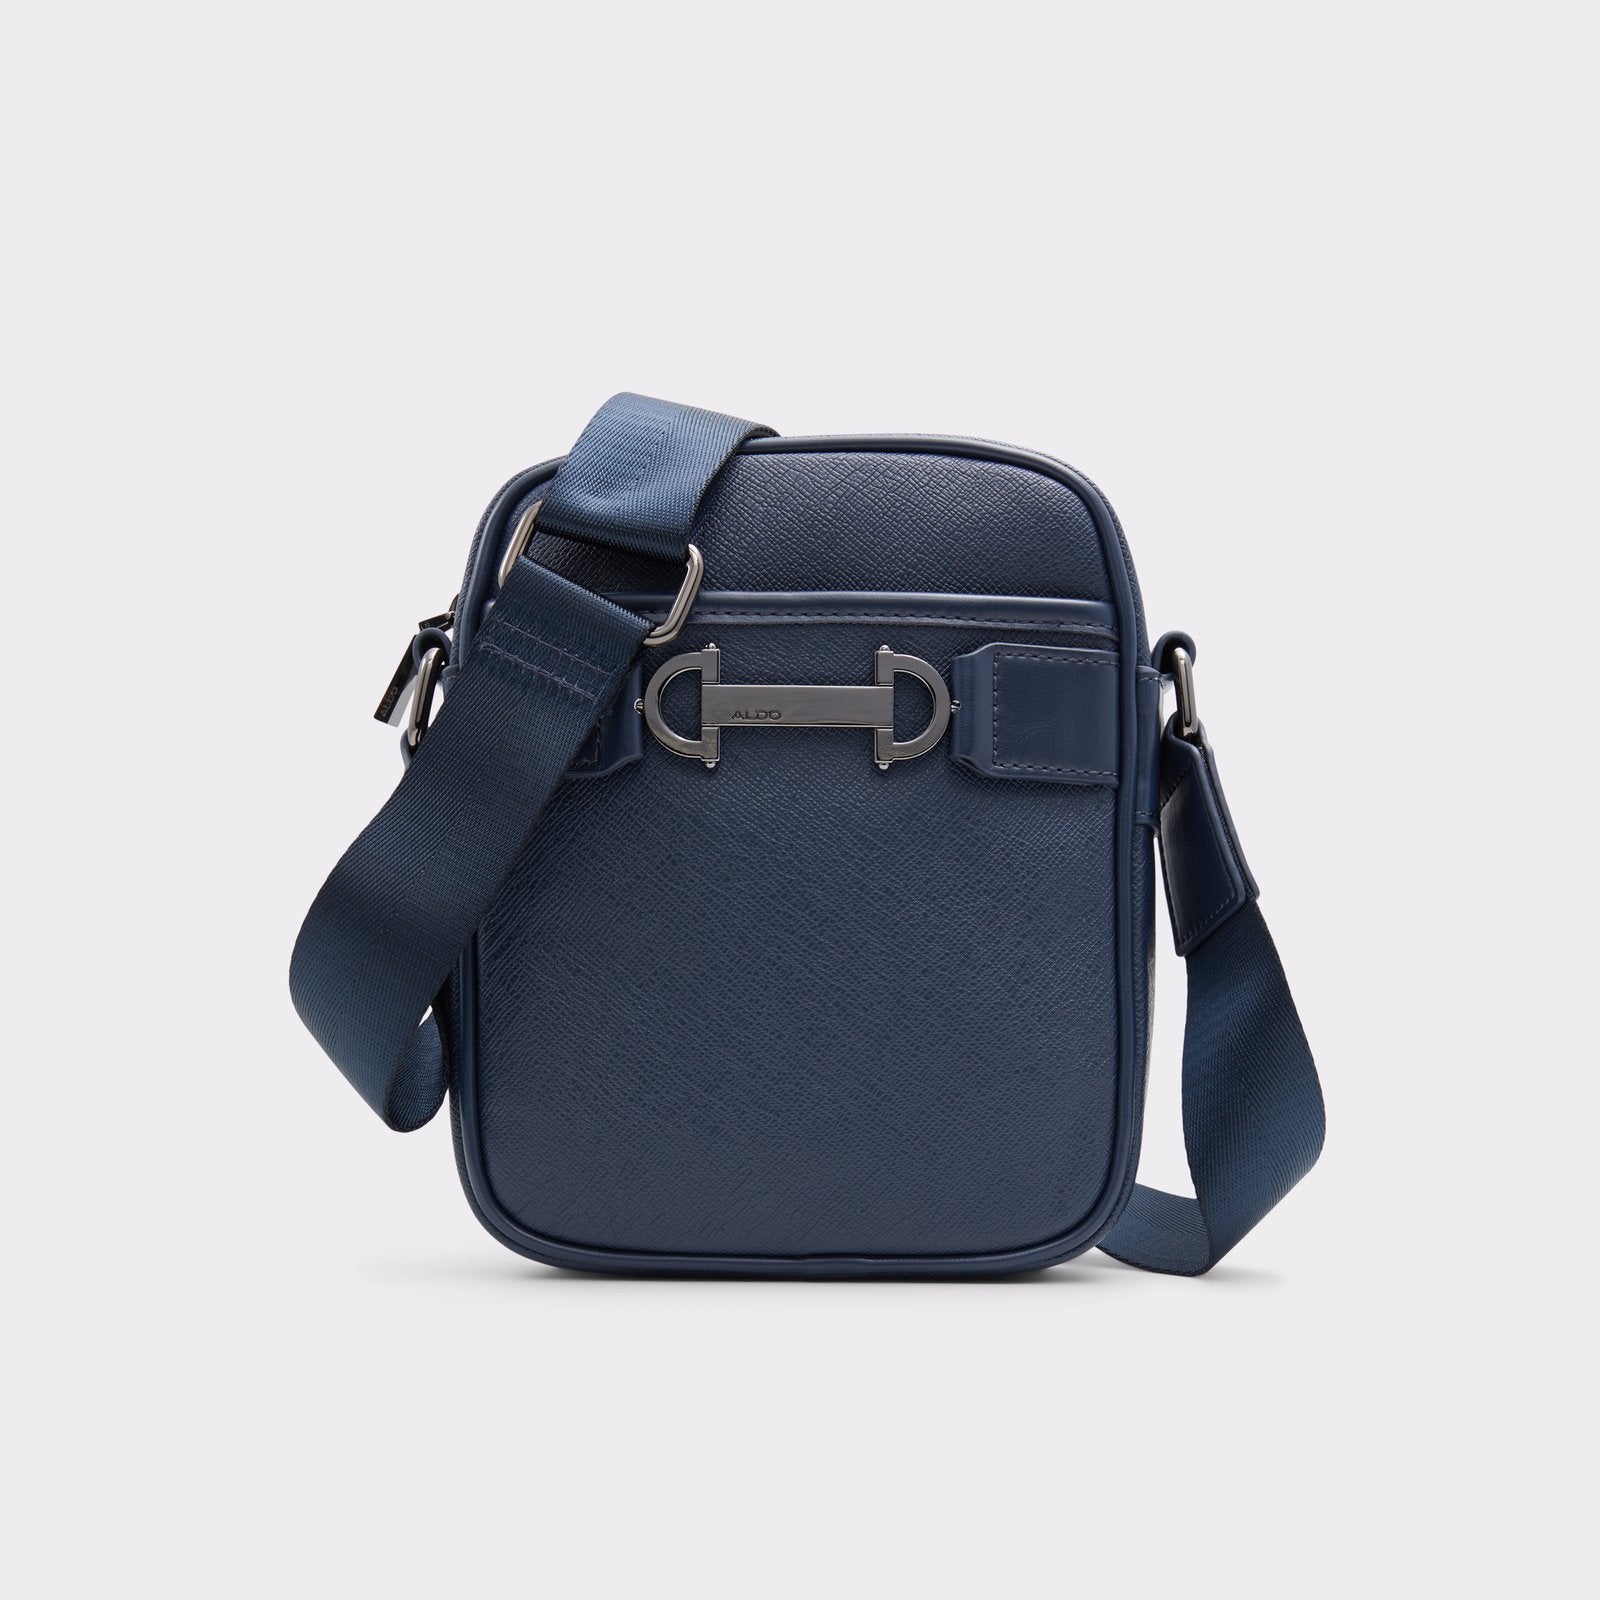 Genuine leather wallet bags, wristlets and sling bags | Der Lederhändler